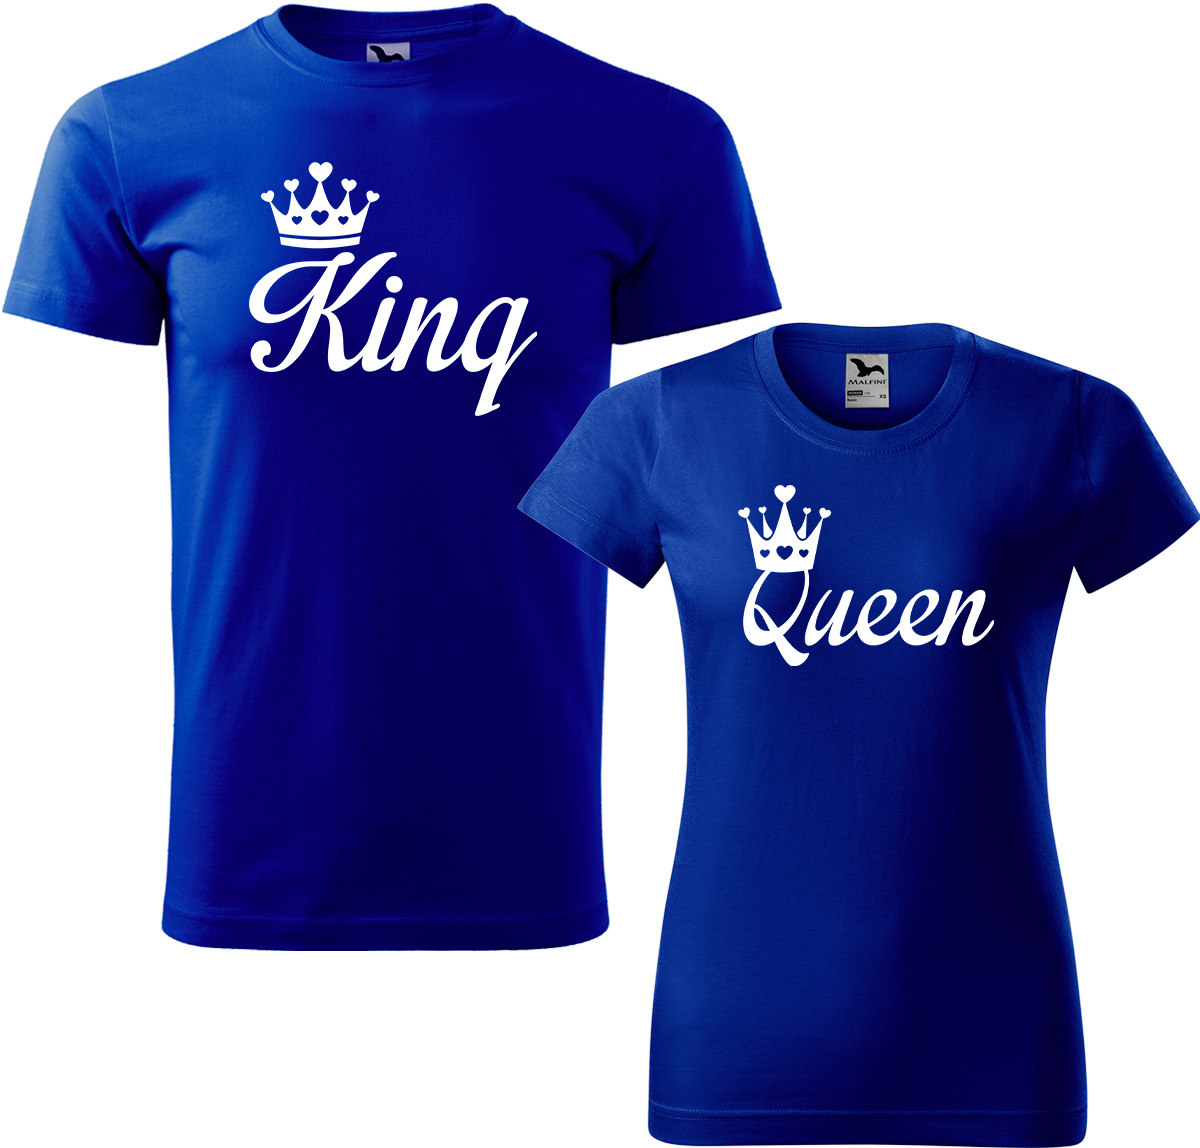 Trička pro páry - King a queen Barva: Královská modrá (05), Velikost dámské tričko: S, Velikost pánské tričko: M